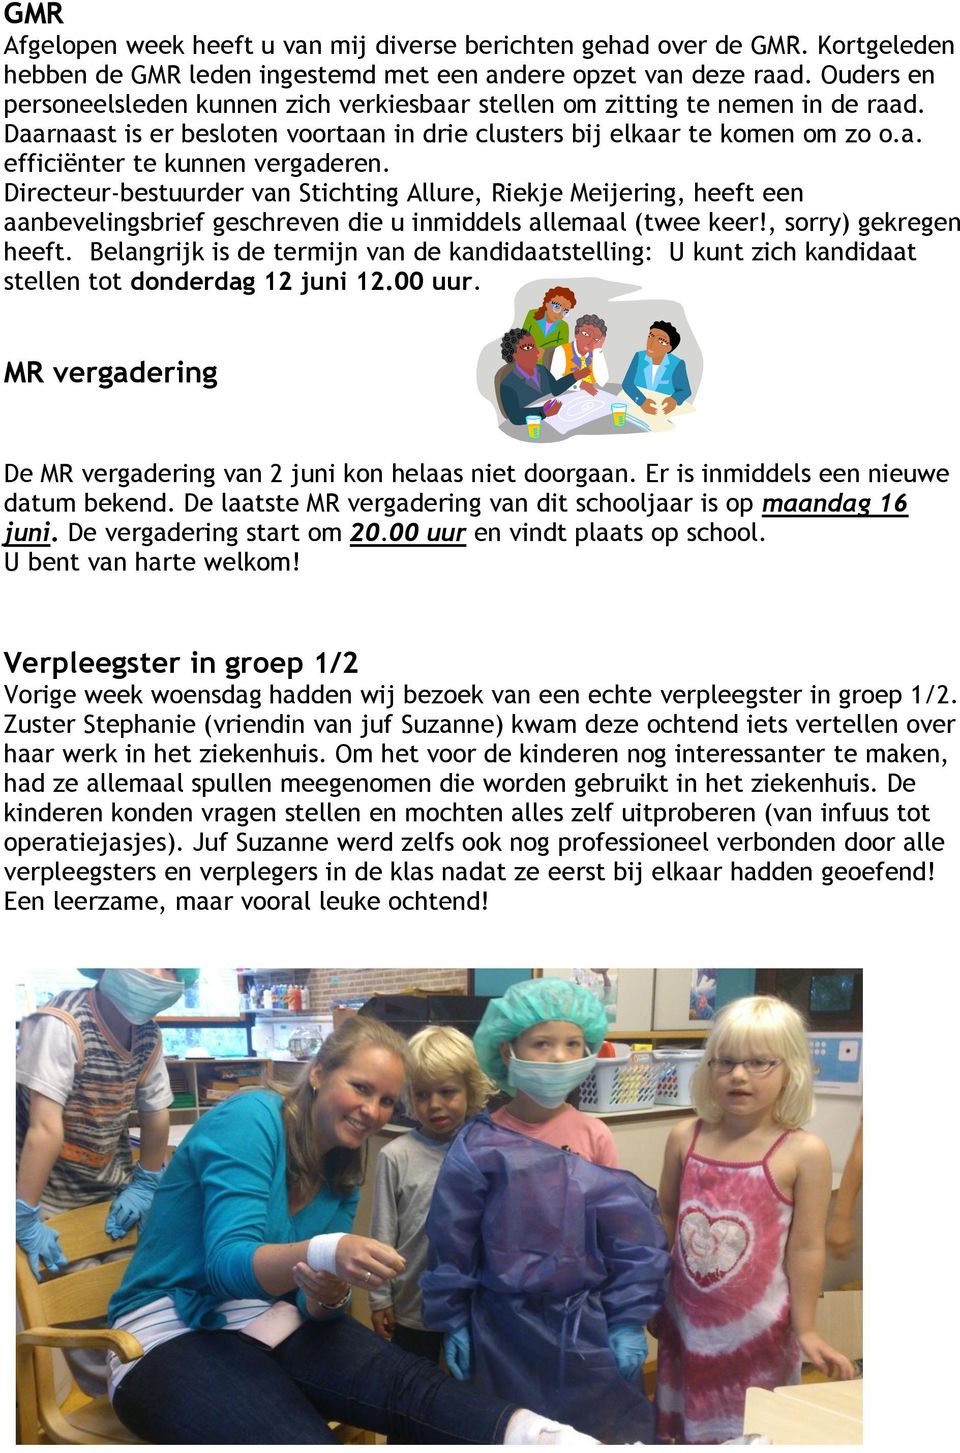 Directeur-bestuurder van Stichting Allure, Riekje Meijering, heeft een aanbevelingsbrief geschreven die u inmiddels allemaal (twee keer!, sorry) gekregen heeft.